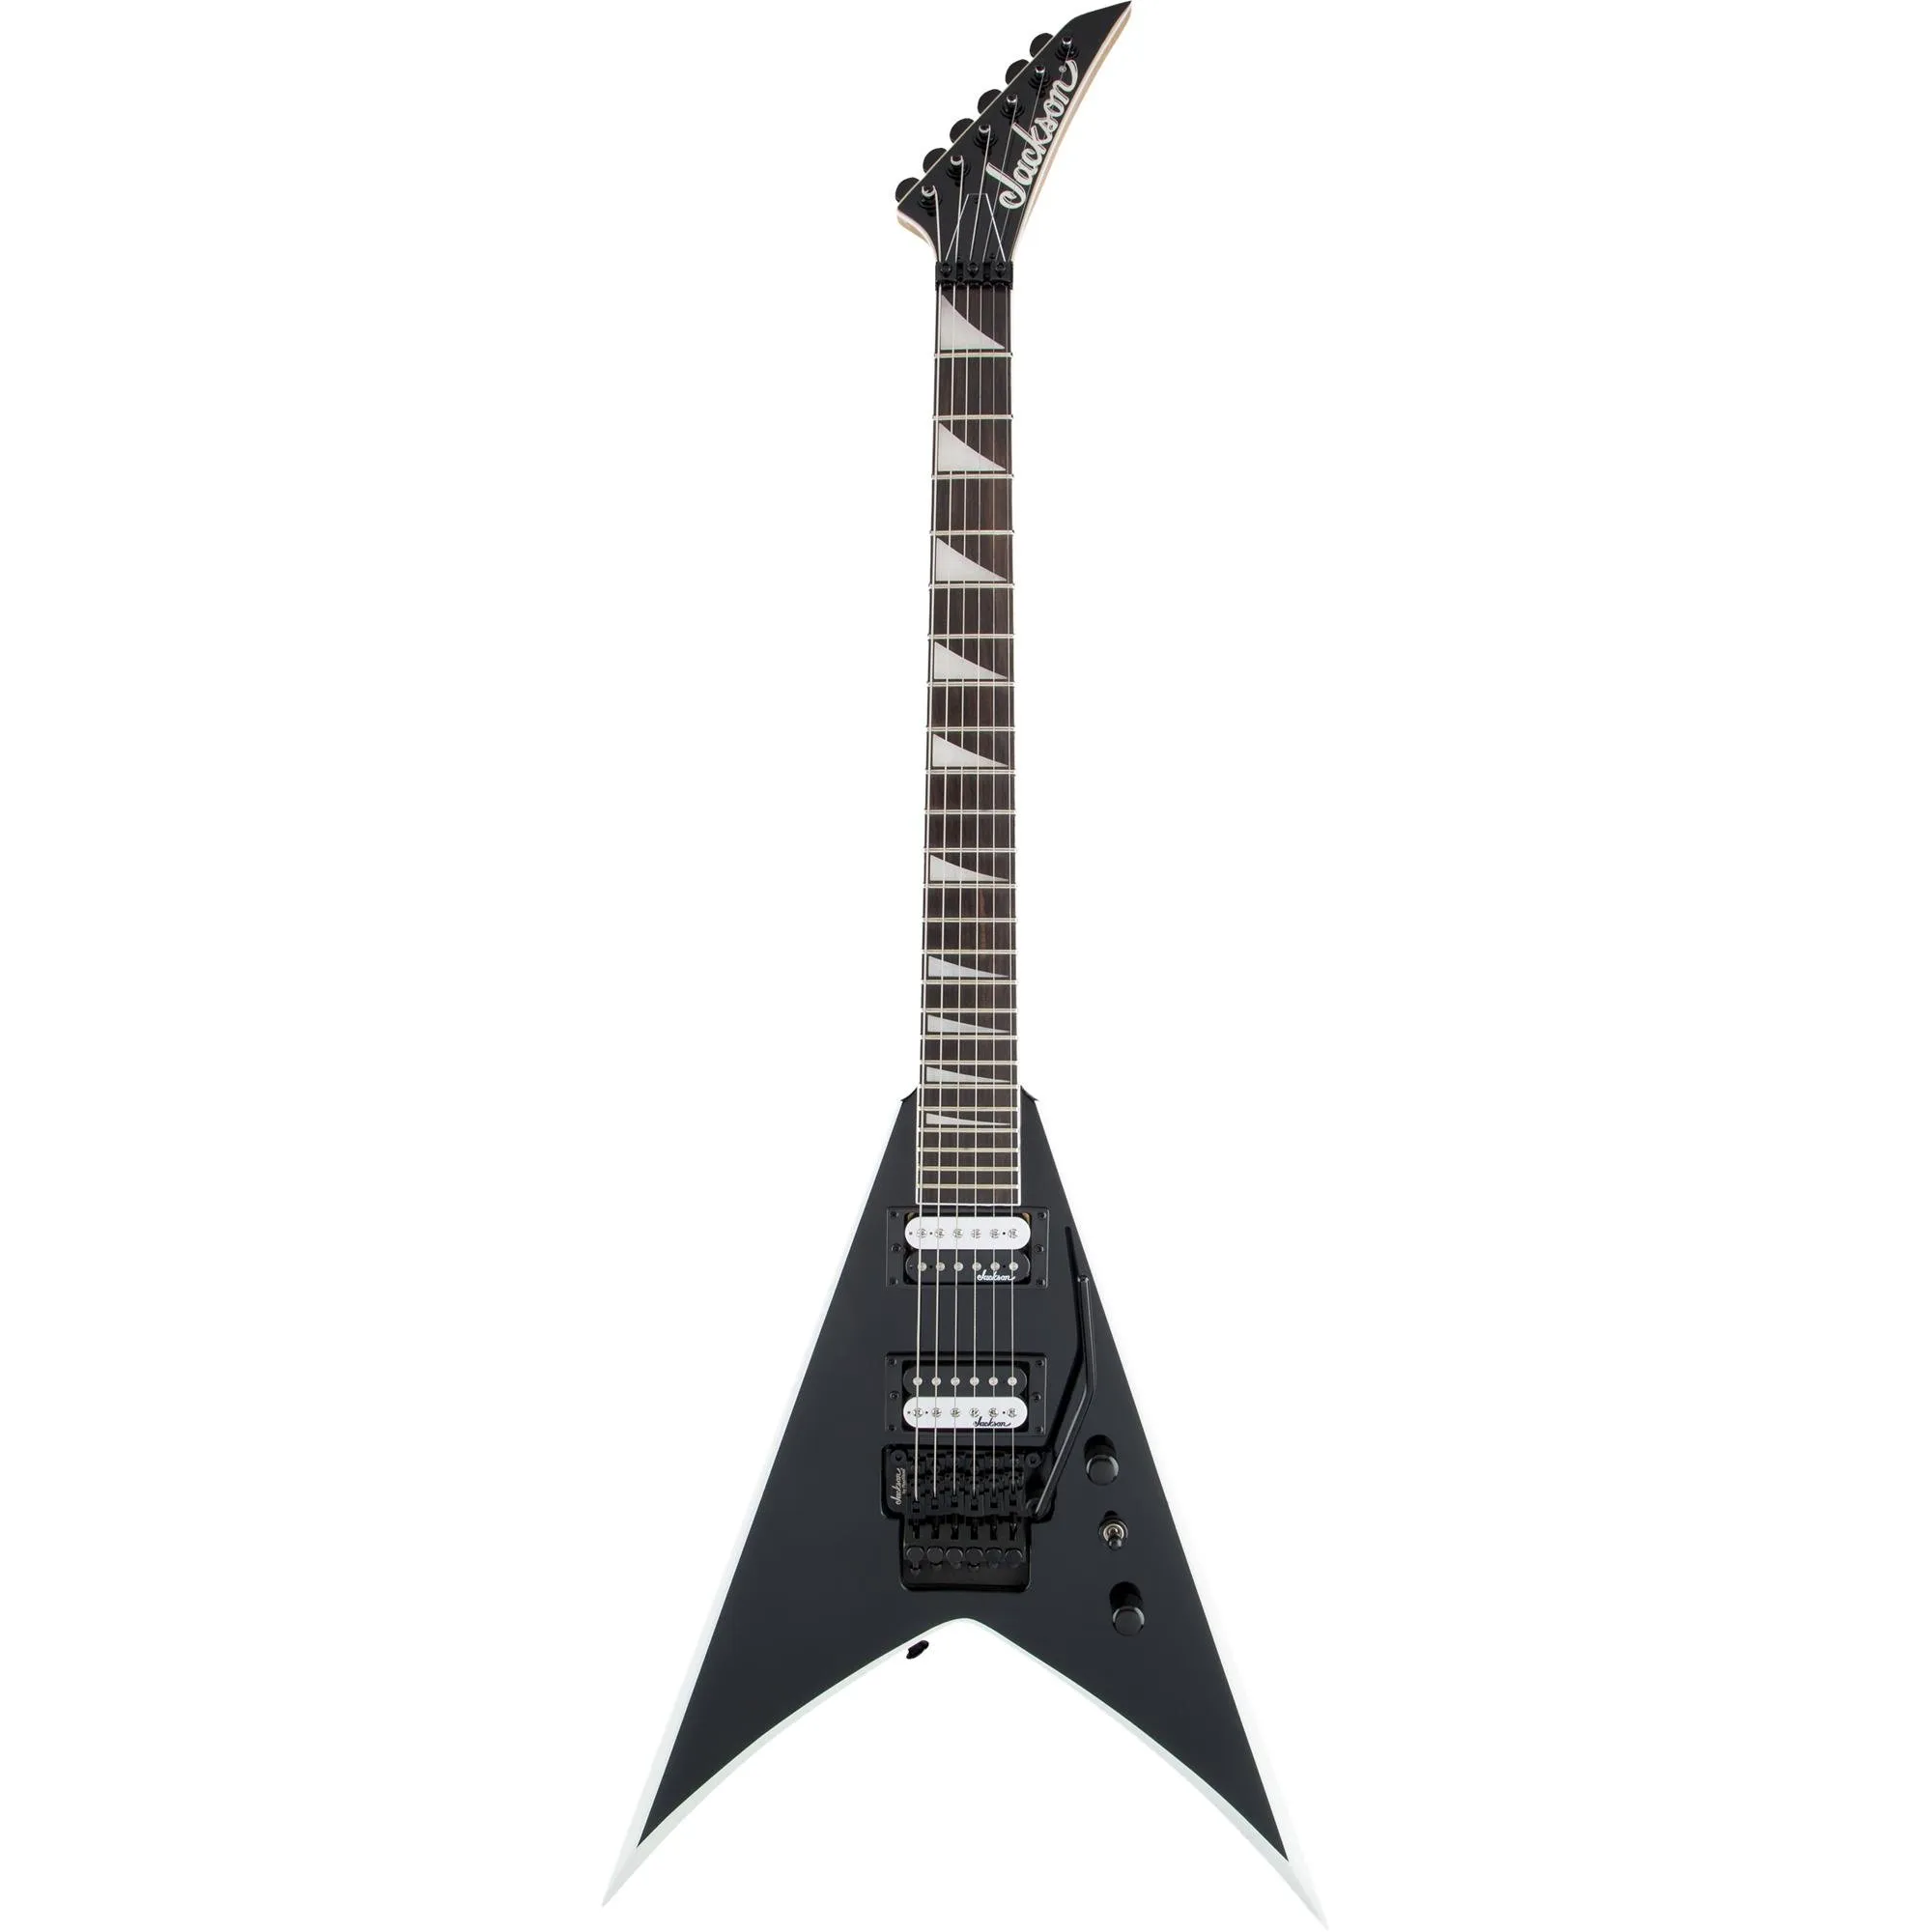 Guitarra Jackson King V JS32 Js Series Black with White Bevels (80374)